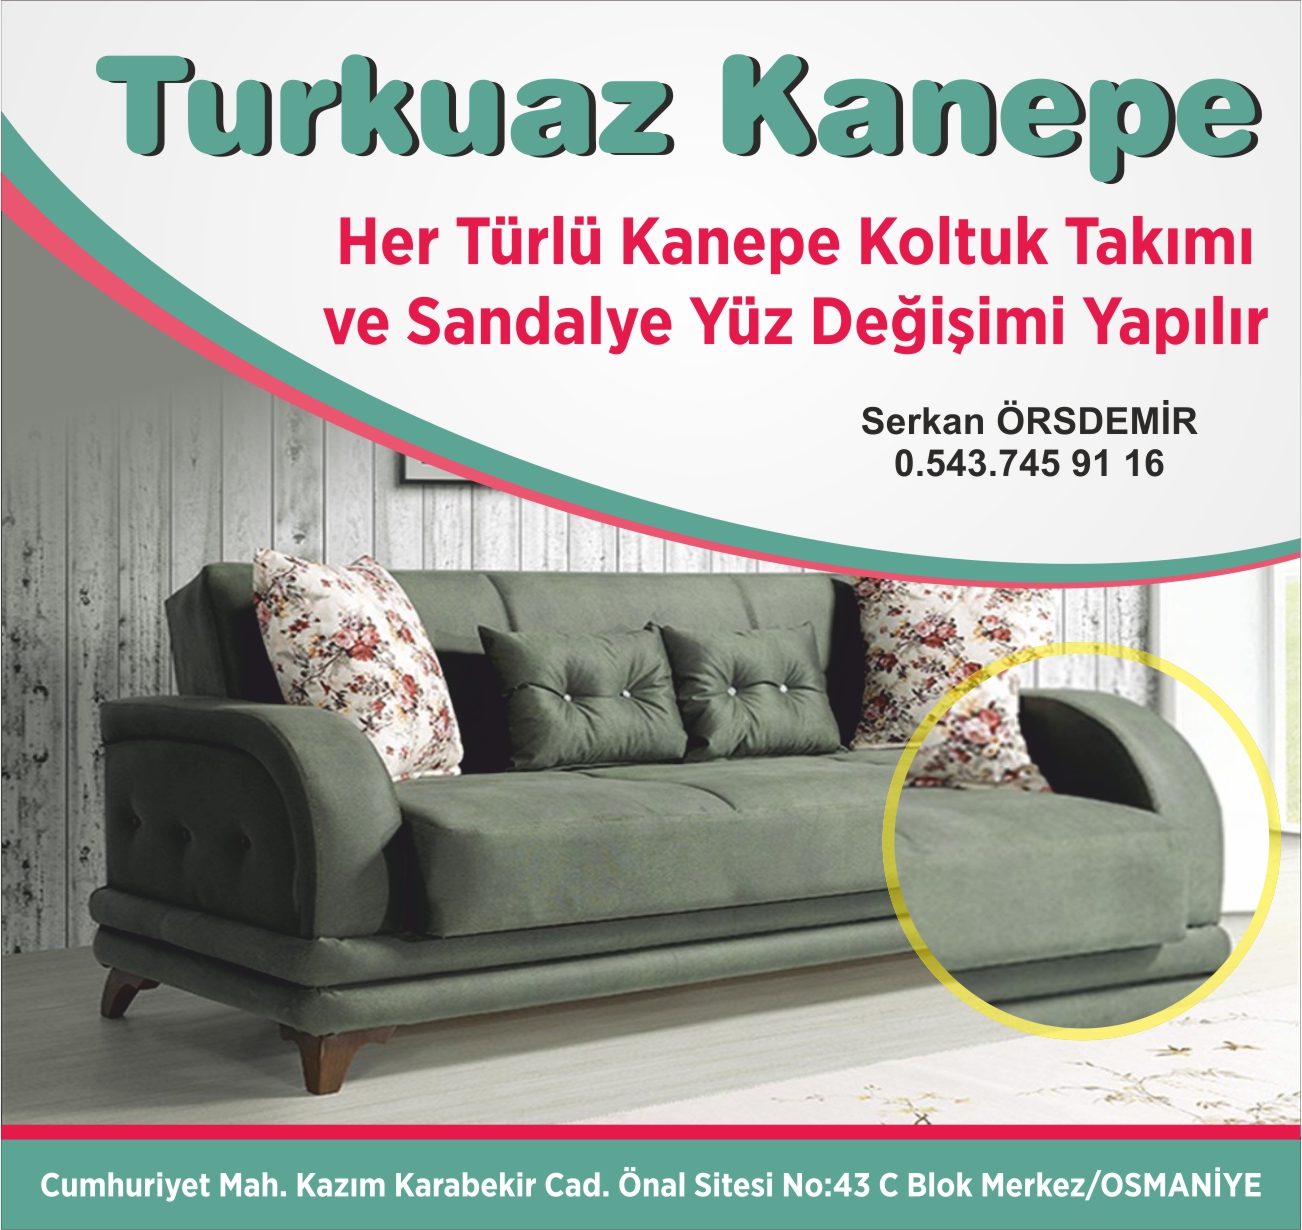 turkuaz-kanepe-osmaniye